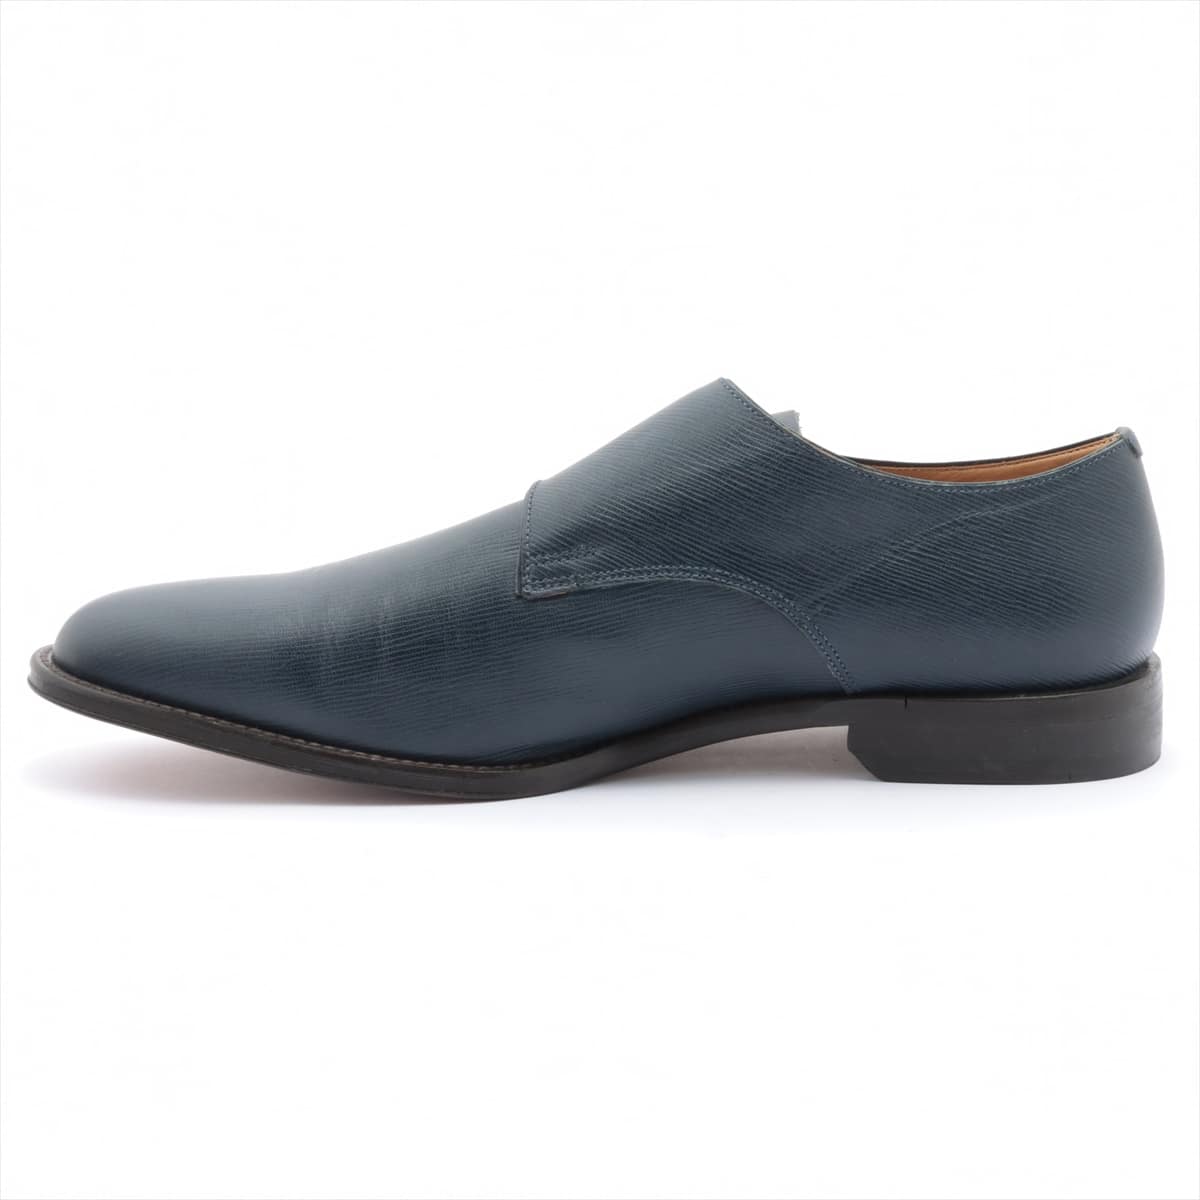 Barry Leather Dress shoes 9E Men's Navy blue Double monk strap Gobriel-108